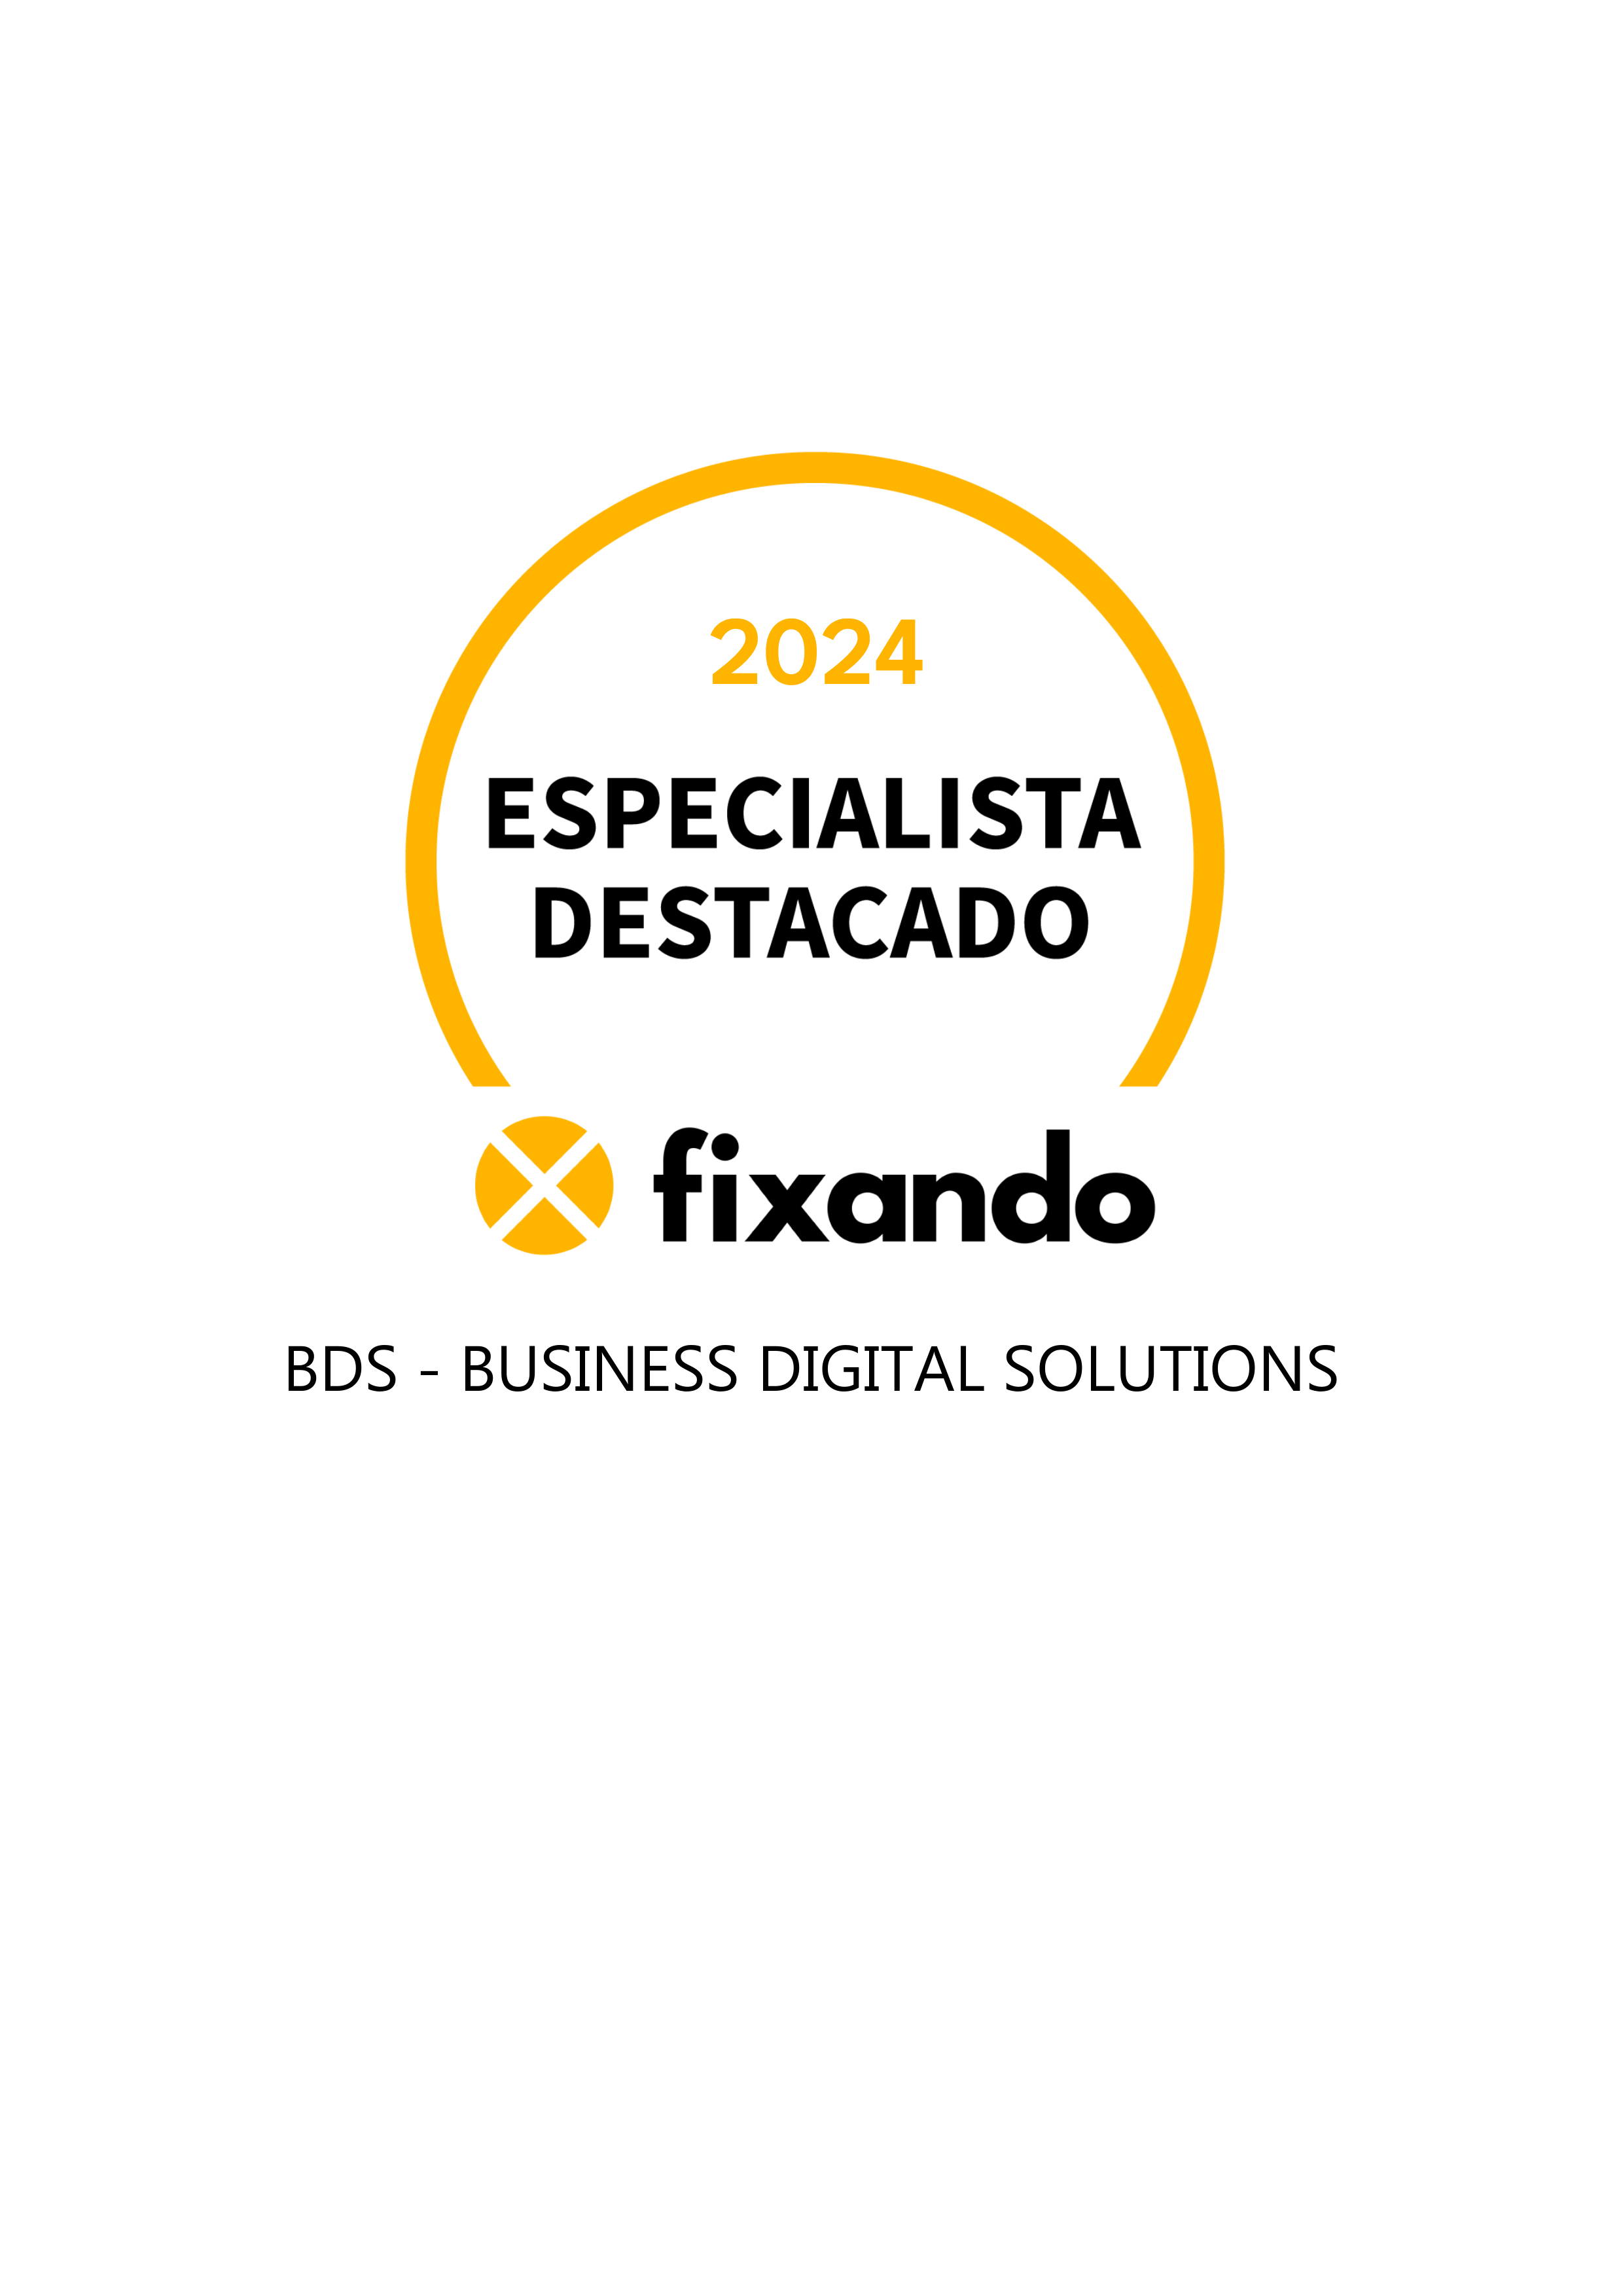 BDS - Business Digital Solutions - Maia - Serviços de Apresentações